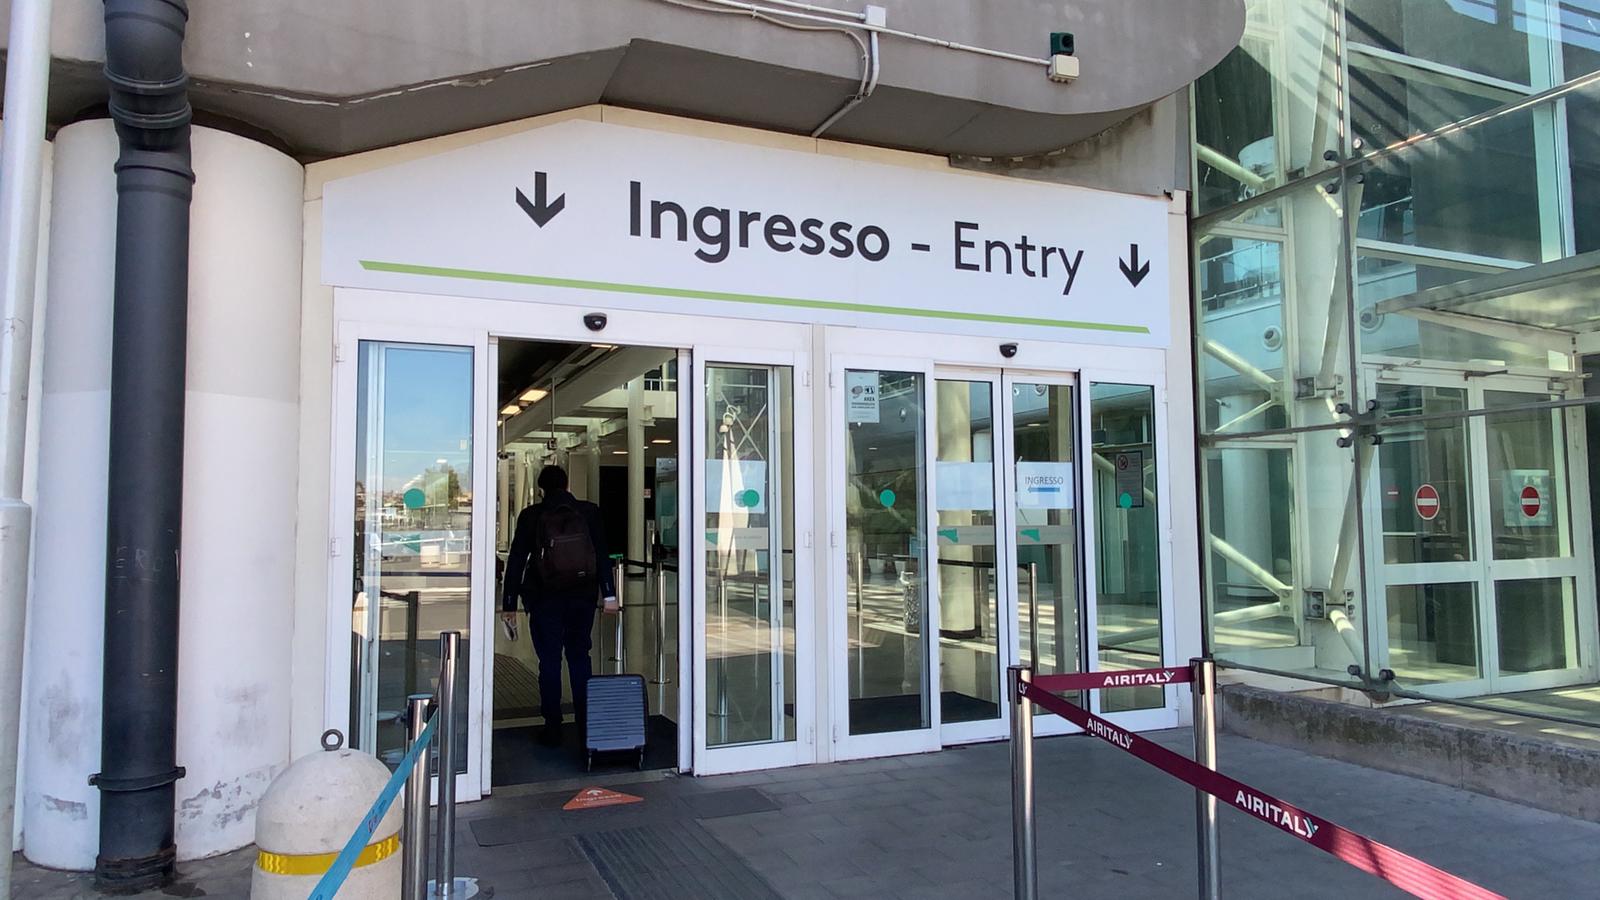 Aeroporto di Catania: accesso consentito solo ai passegger. Nuove misure per garantire la massima sicurezza